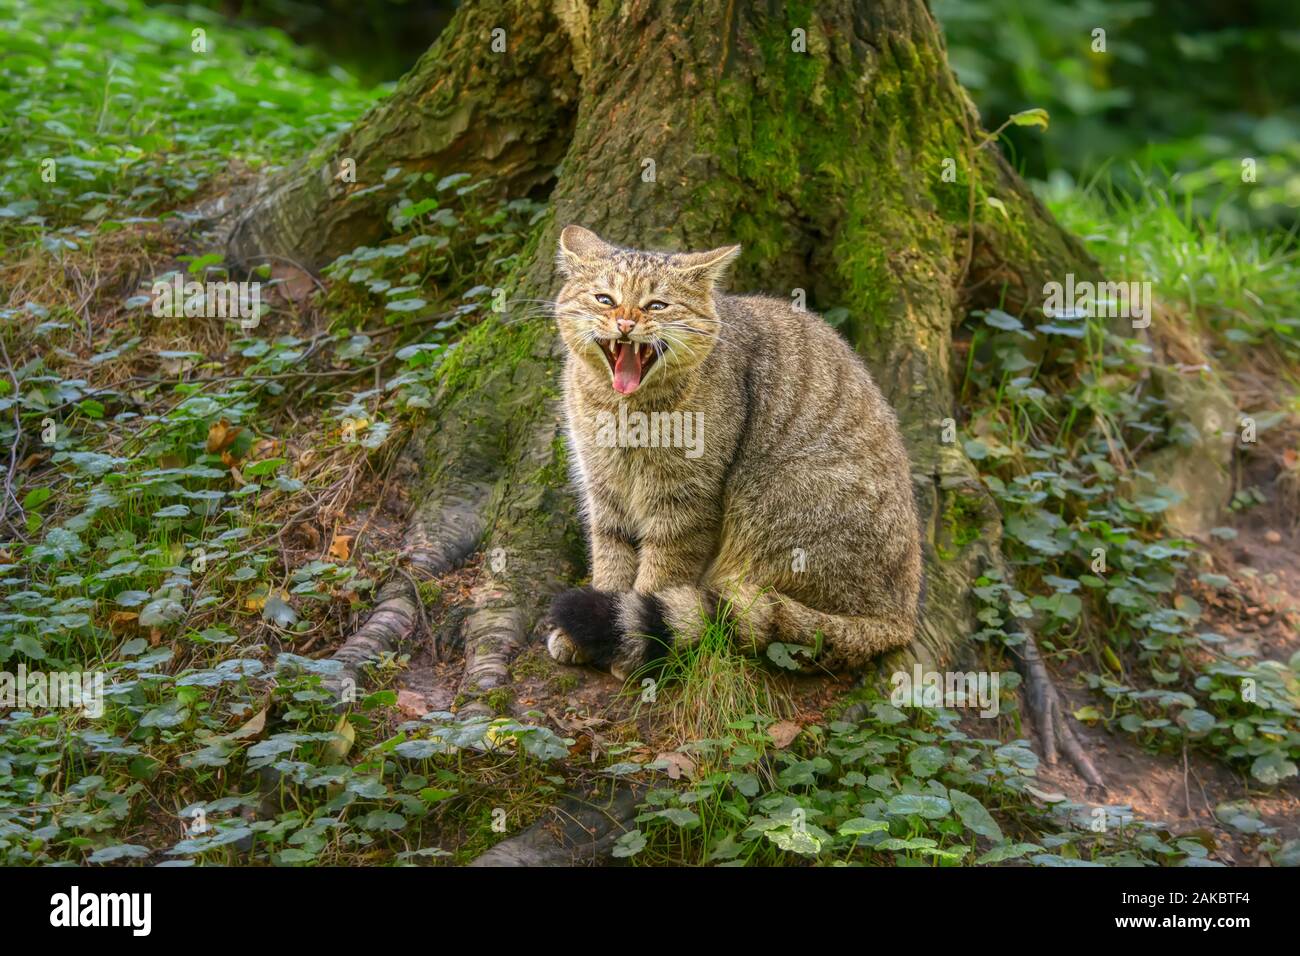 Die europäische Wildkatze (Felis silvestris) Sitzen mit geöffnetem Mund Zähne, seine charakteristischen buschigen Schwanz mit schwarzer Rins und eine schwarze Spitze Stockfoto